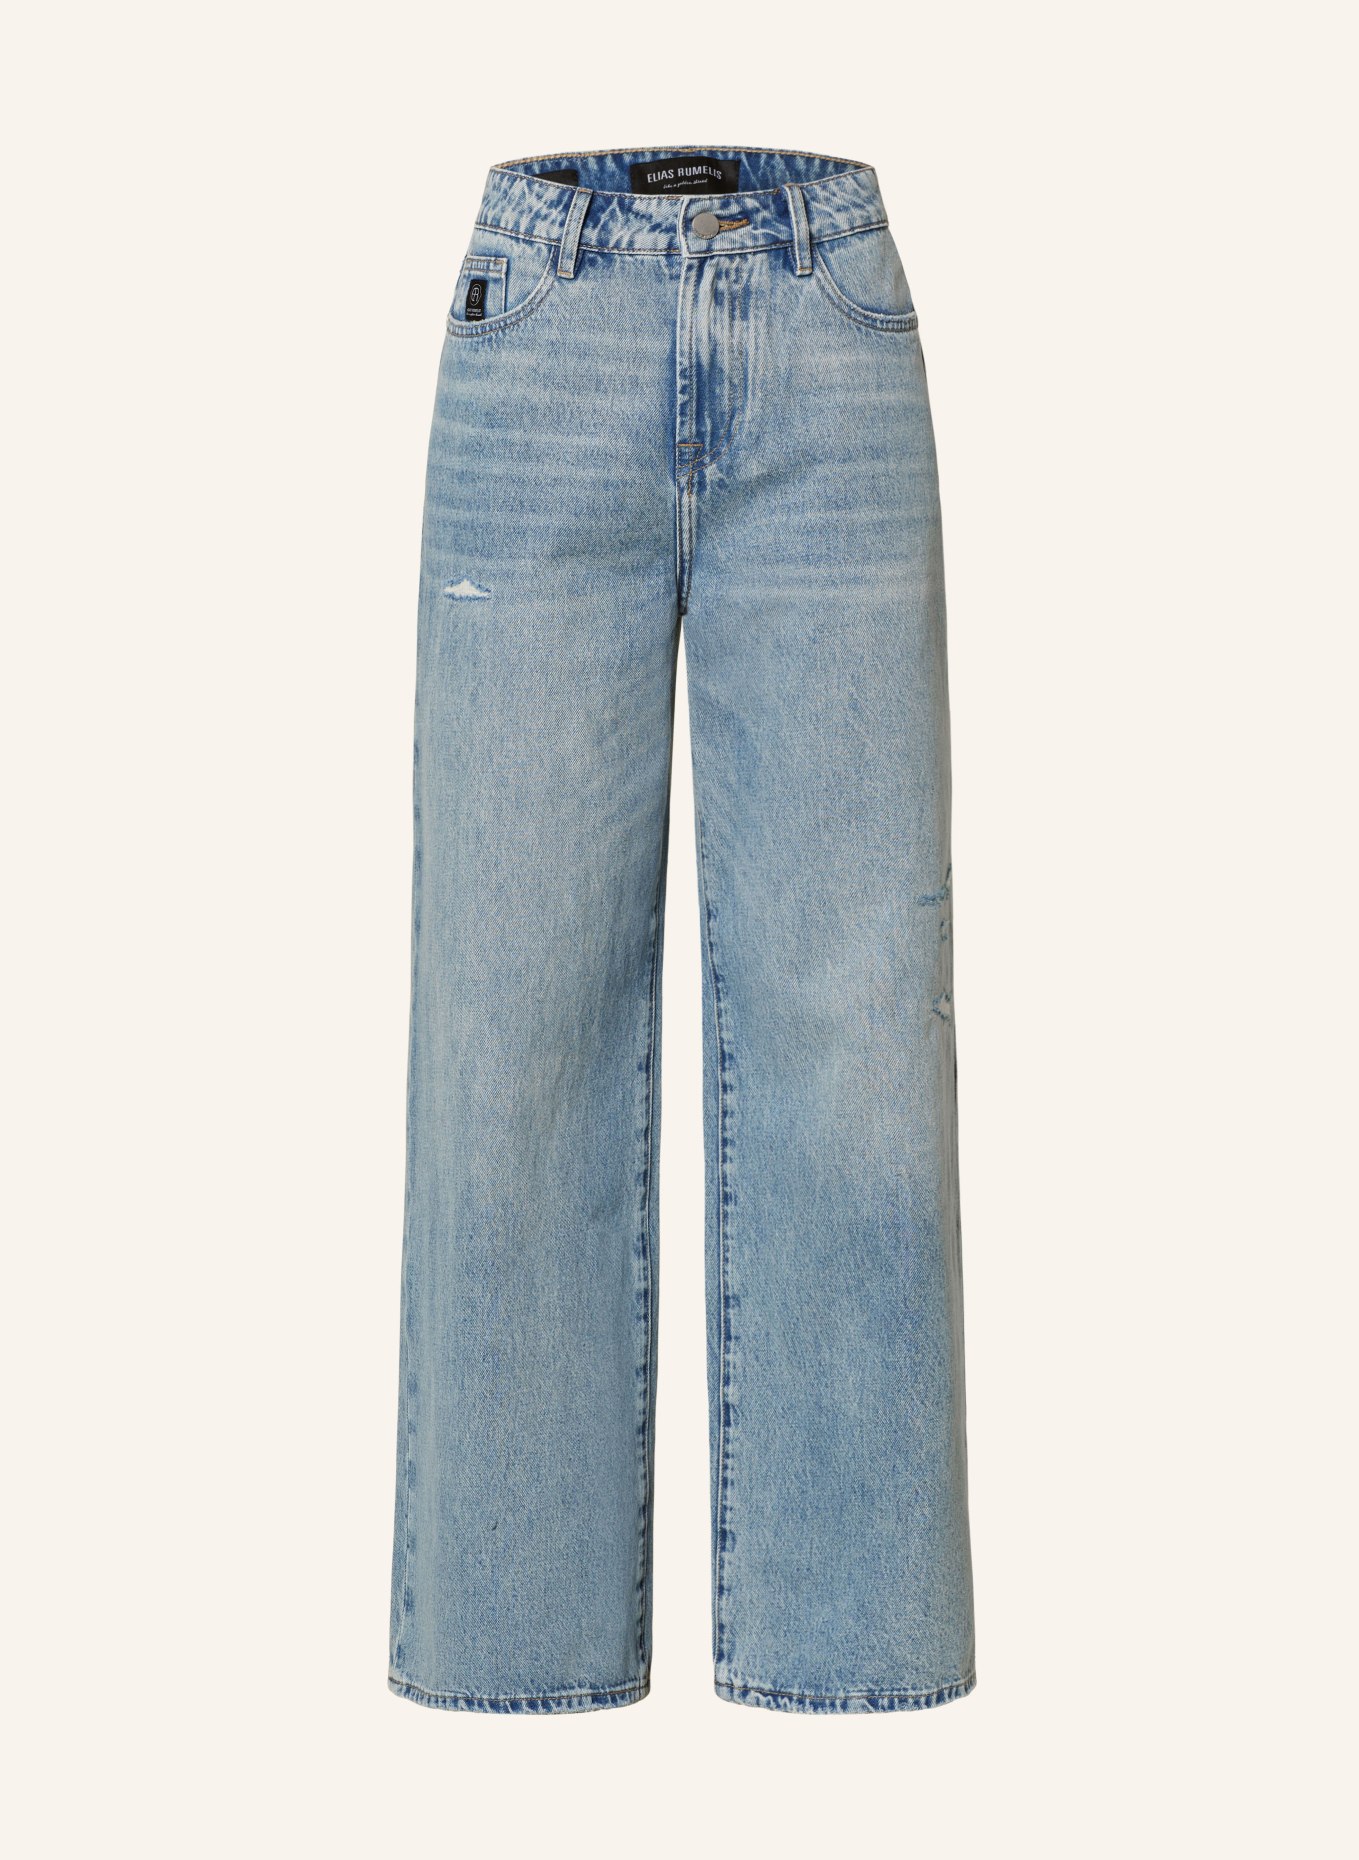 ELIAS RUMELIS Straight Jeans ERKALEA, Farbe: 778 lagoon blue (Bild 1)